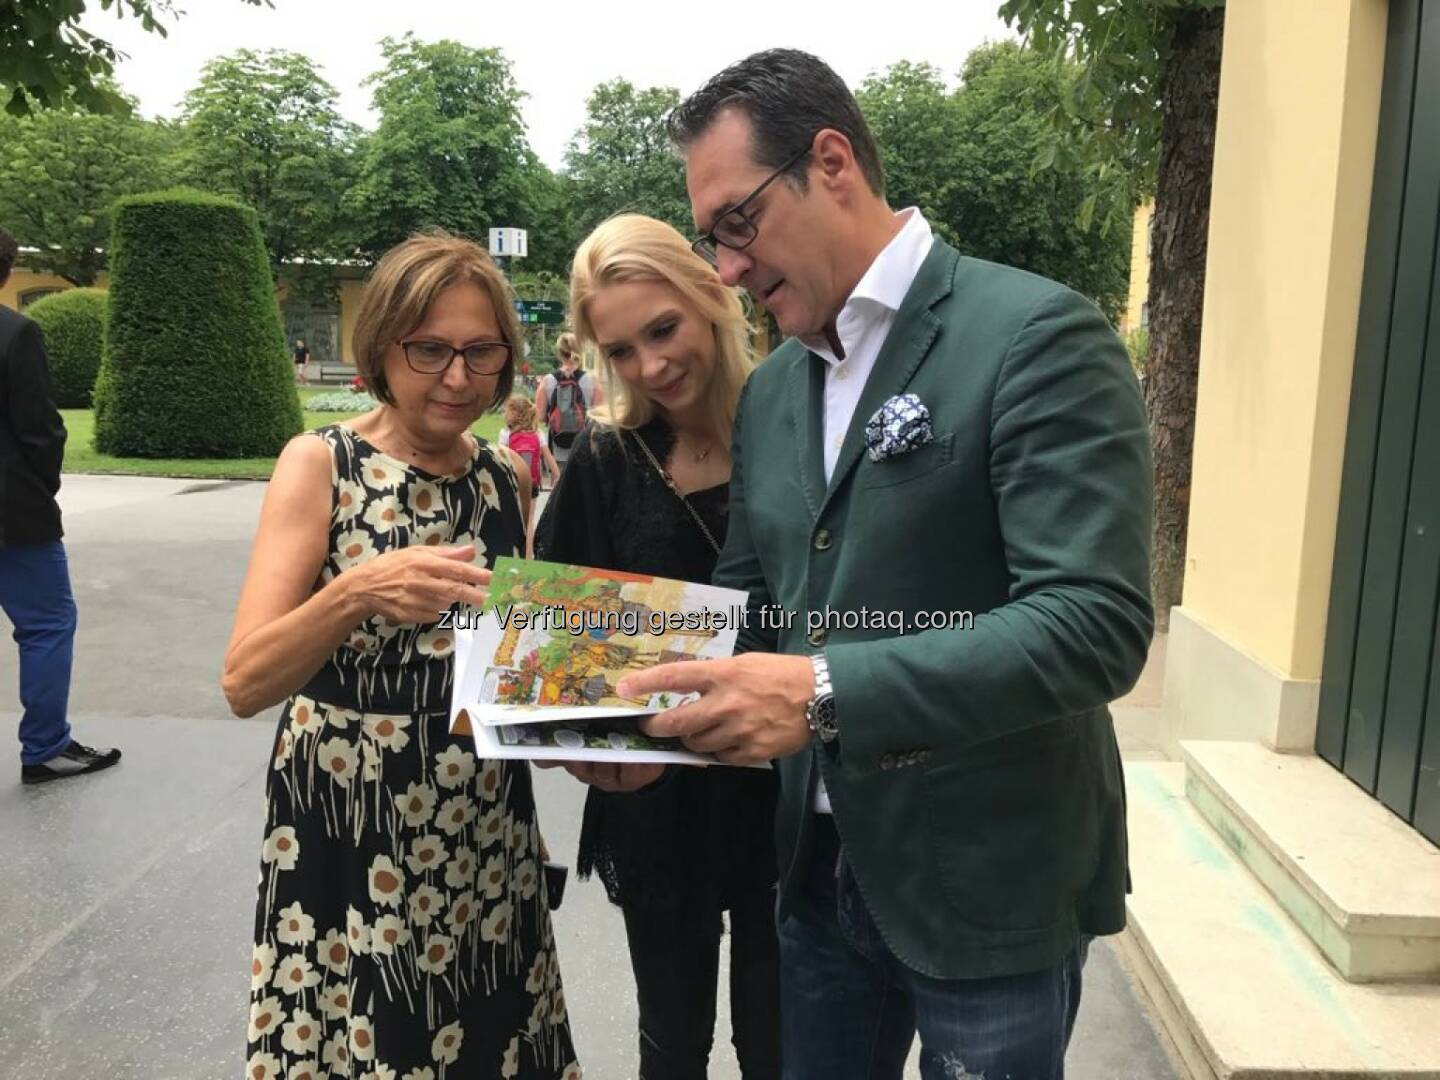 Philippa und HC Strache bedankten sich bei der Direktorin Dagmar Schratter - Freiheitlicher Parlamentsklub - FPÖ: Ehepaar Strache übernimmt Tierpatenschaft in Schönbrunn (Bild: FPÖ)